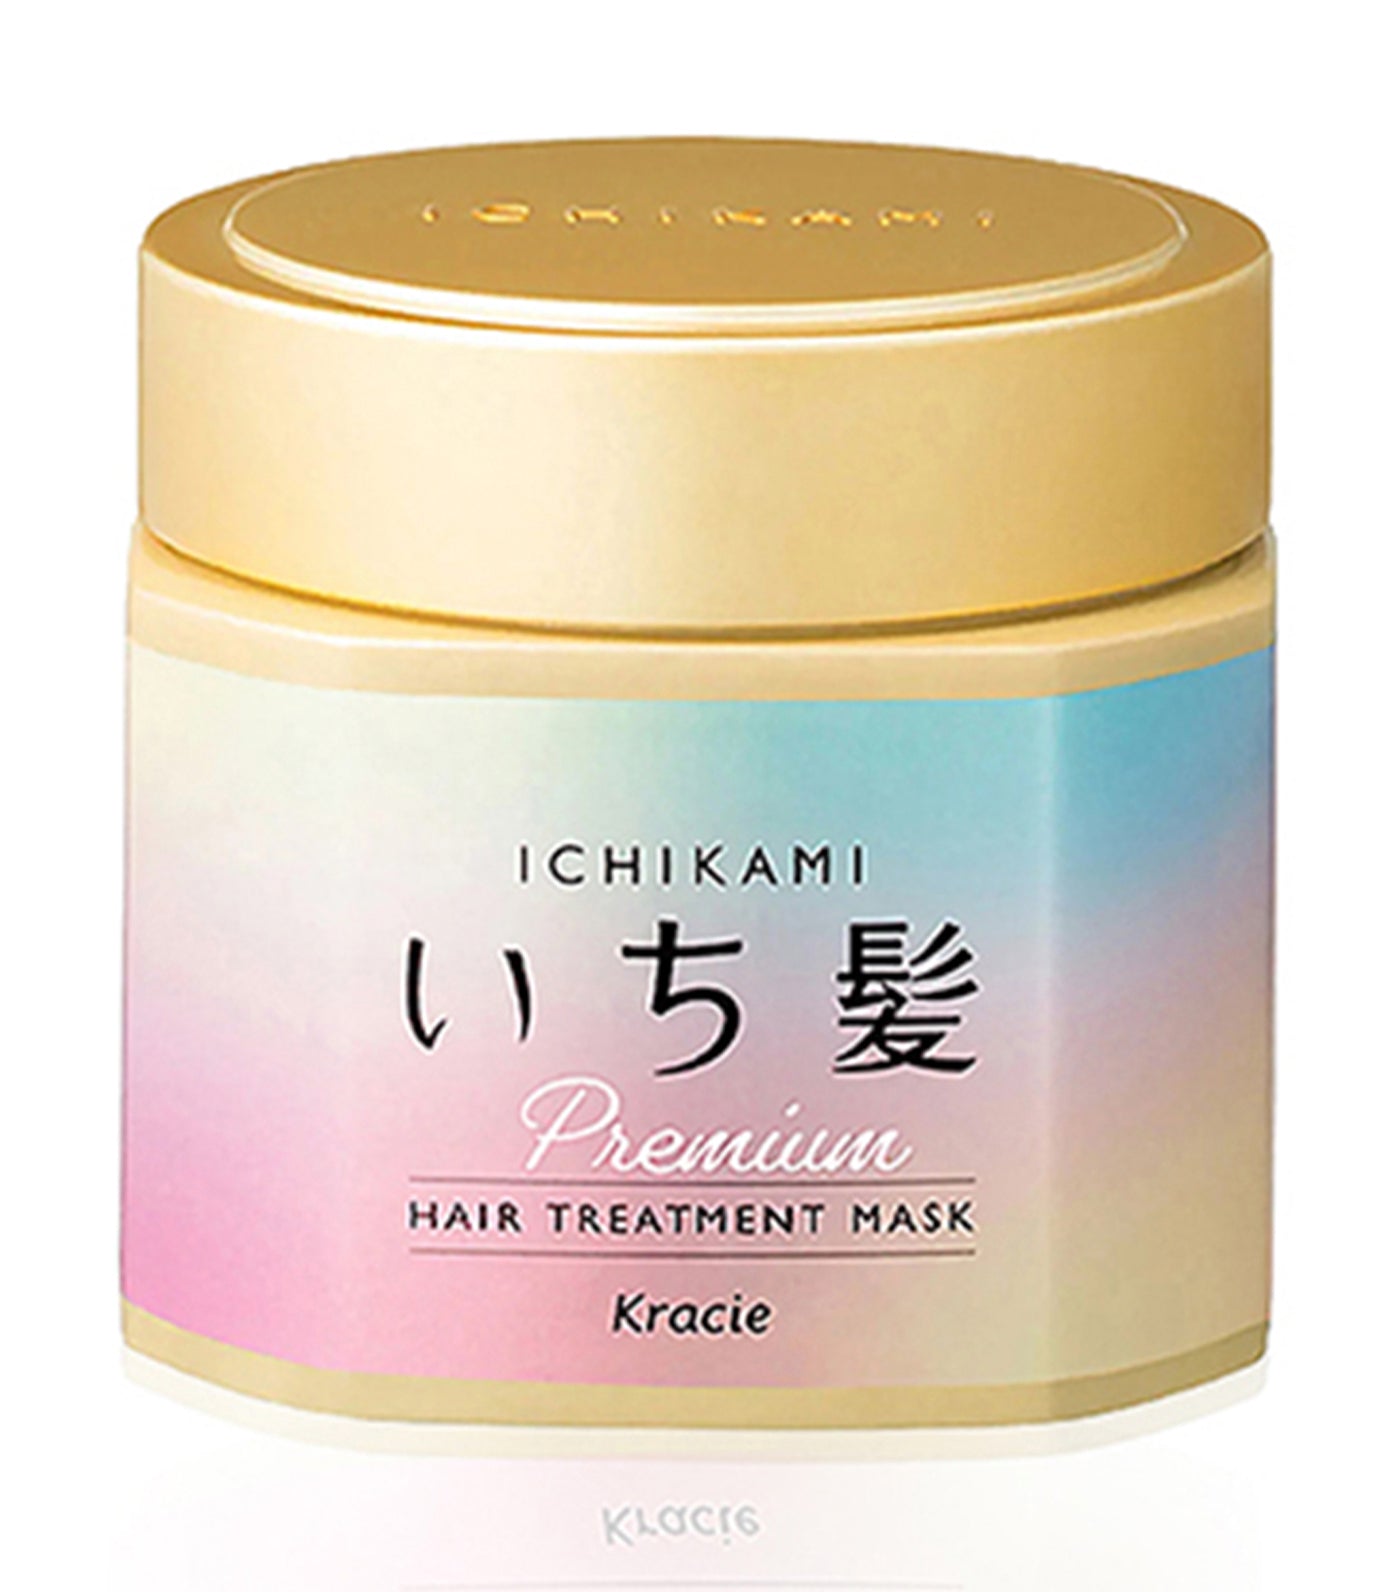 Ichikami Premium Hair Treatment Mask